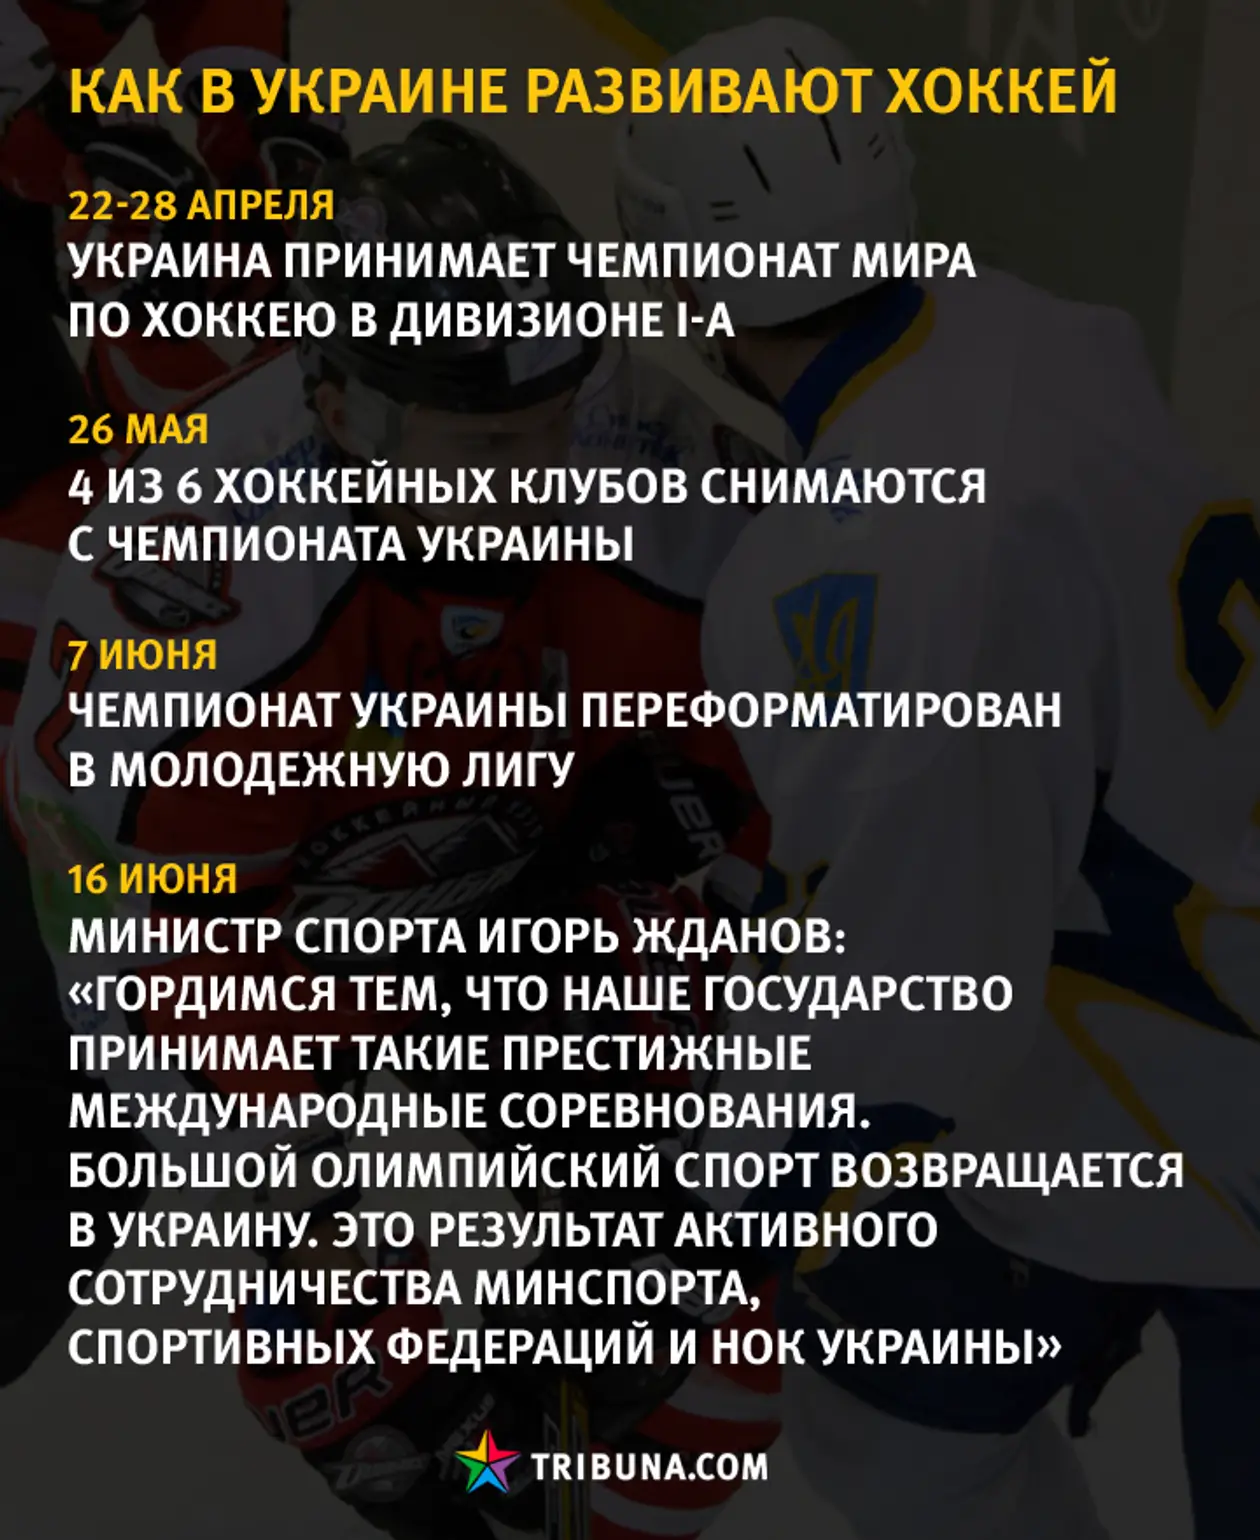 Весь сюрреализм украинского хоккея в одной картинке